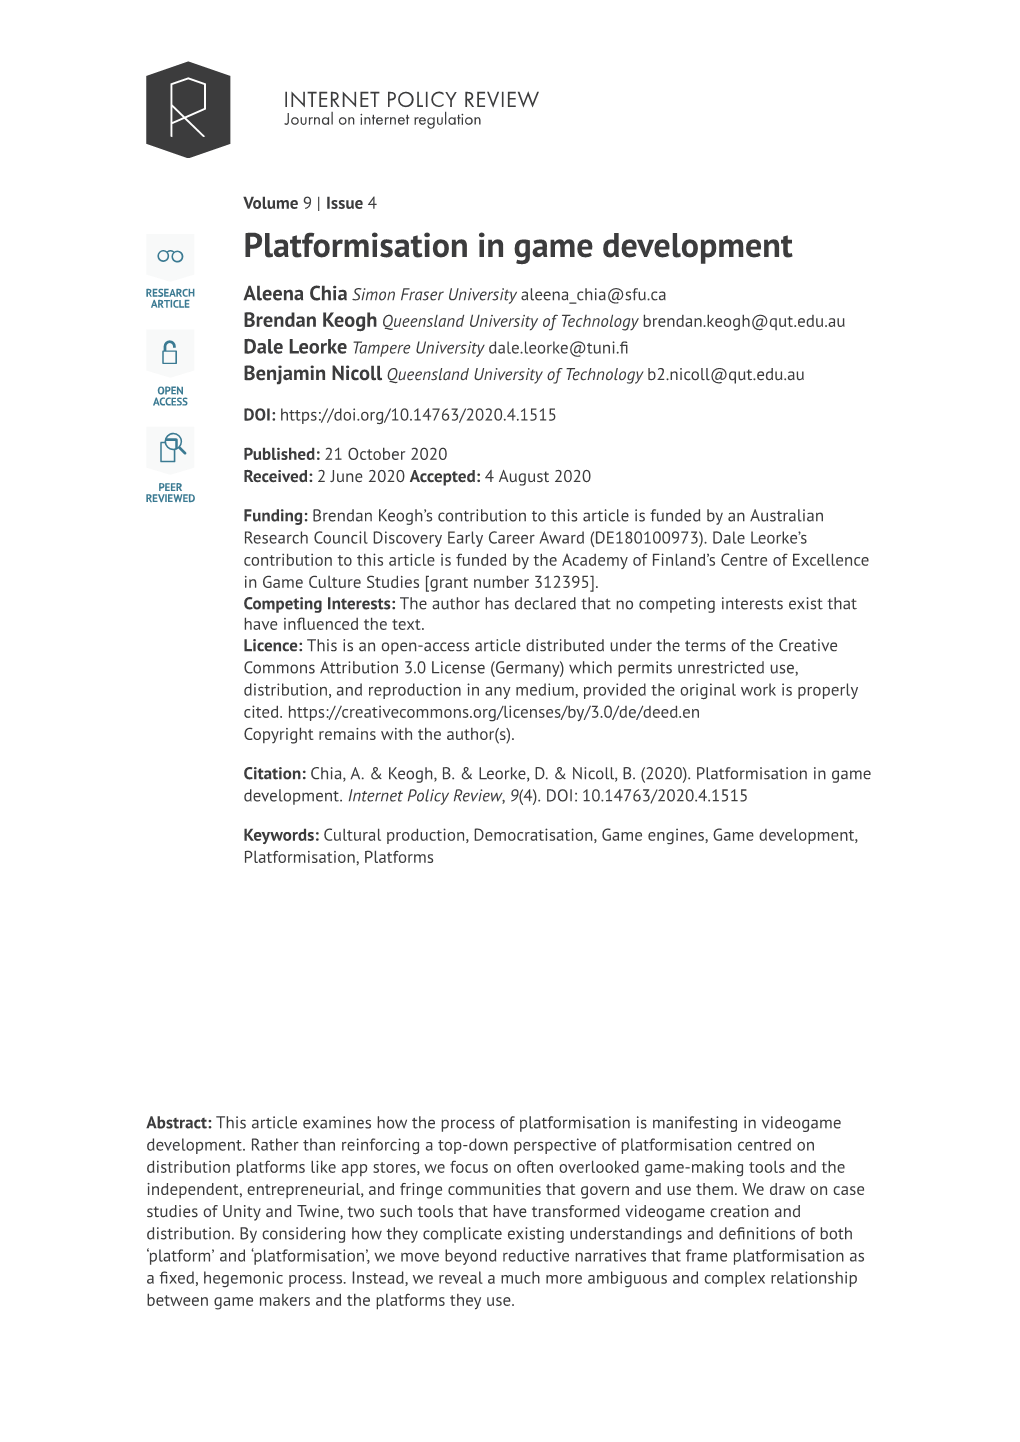 Platformisation in Game Development